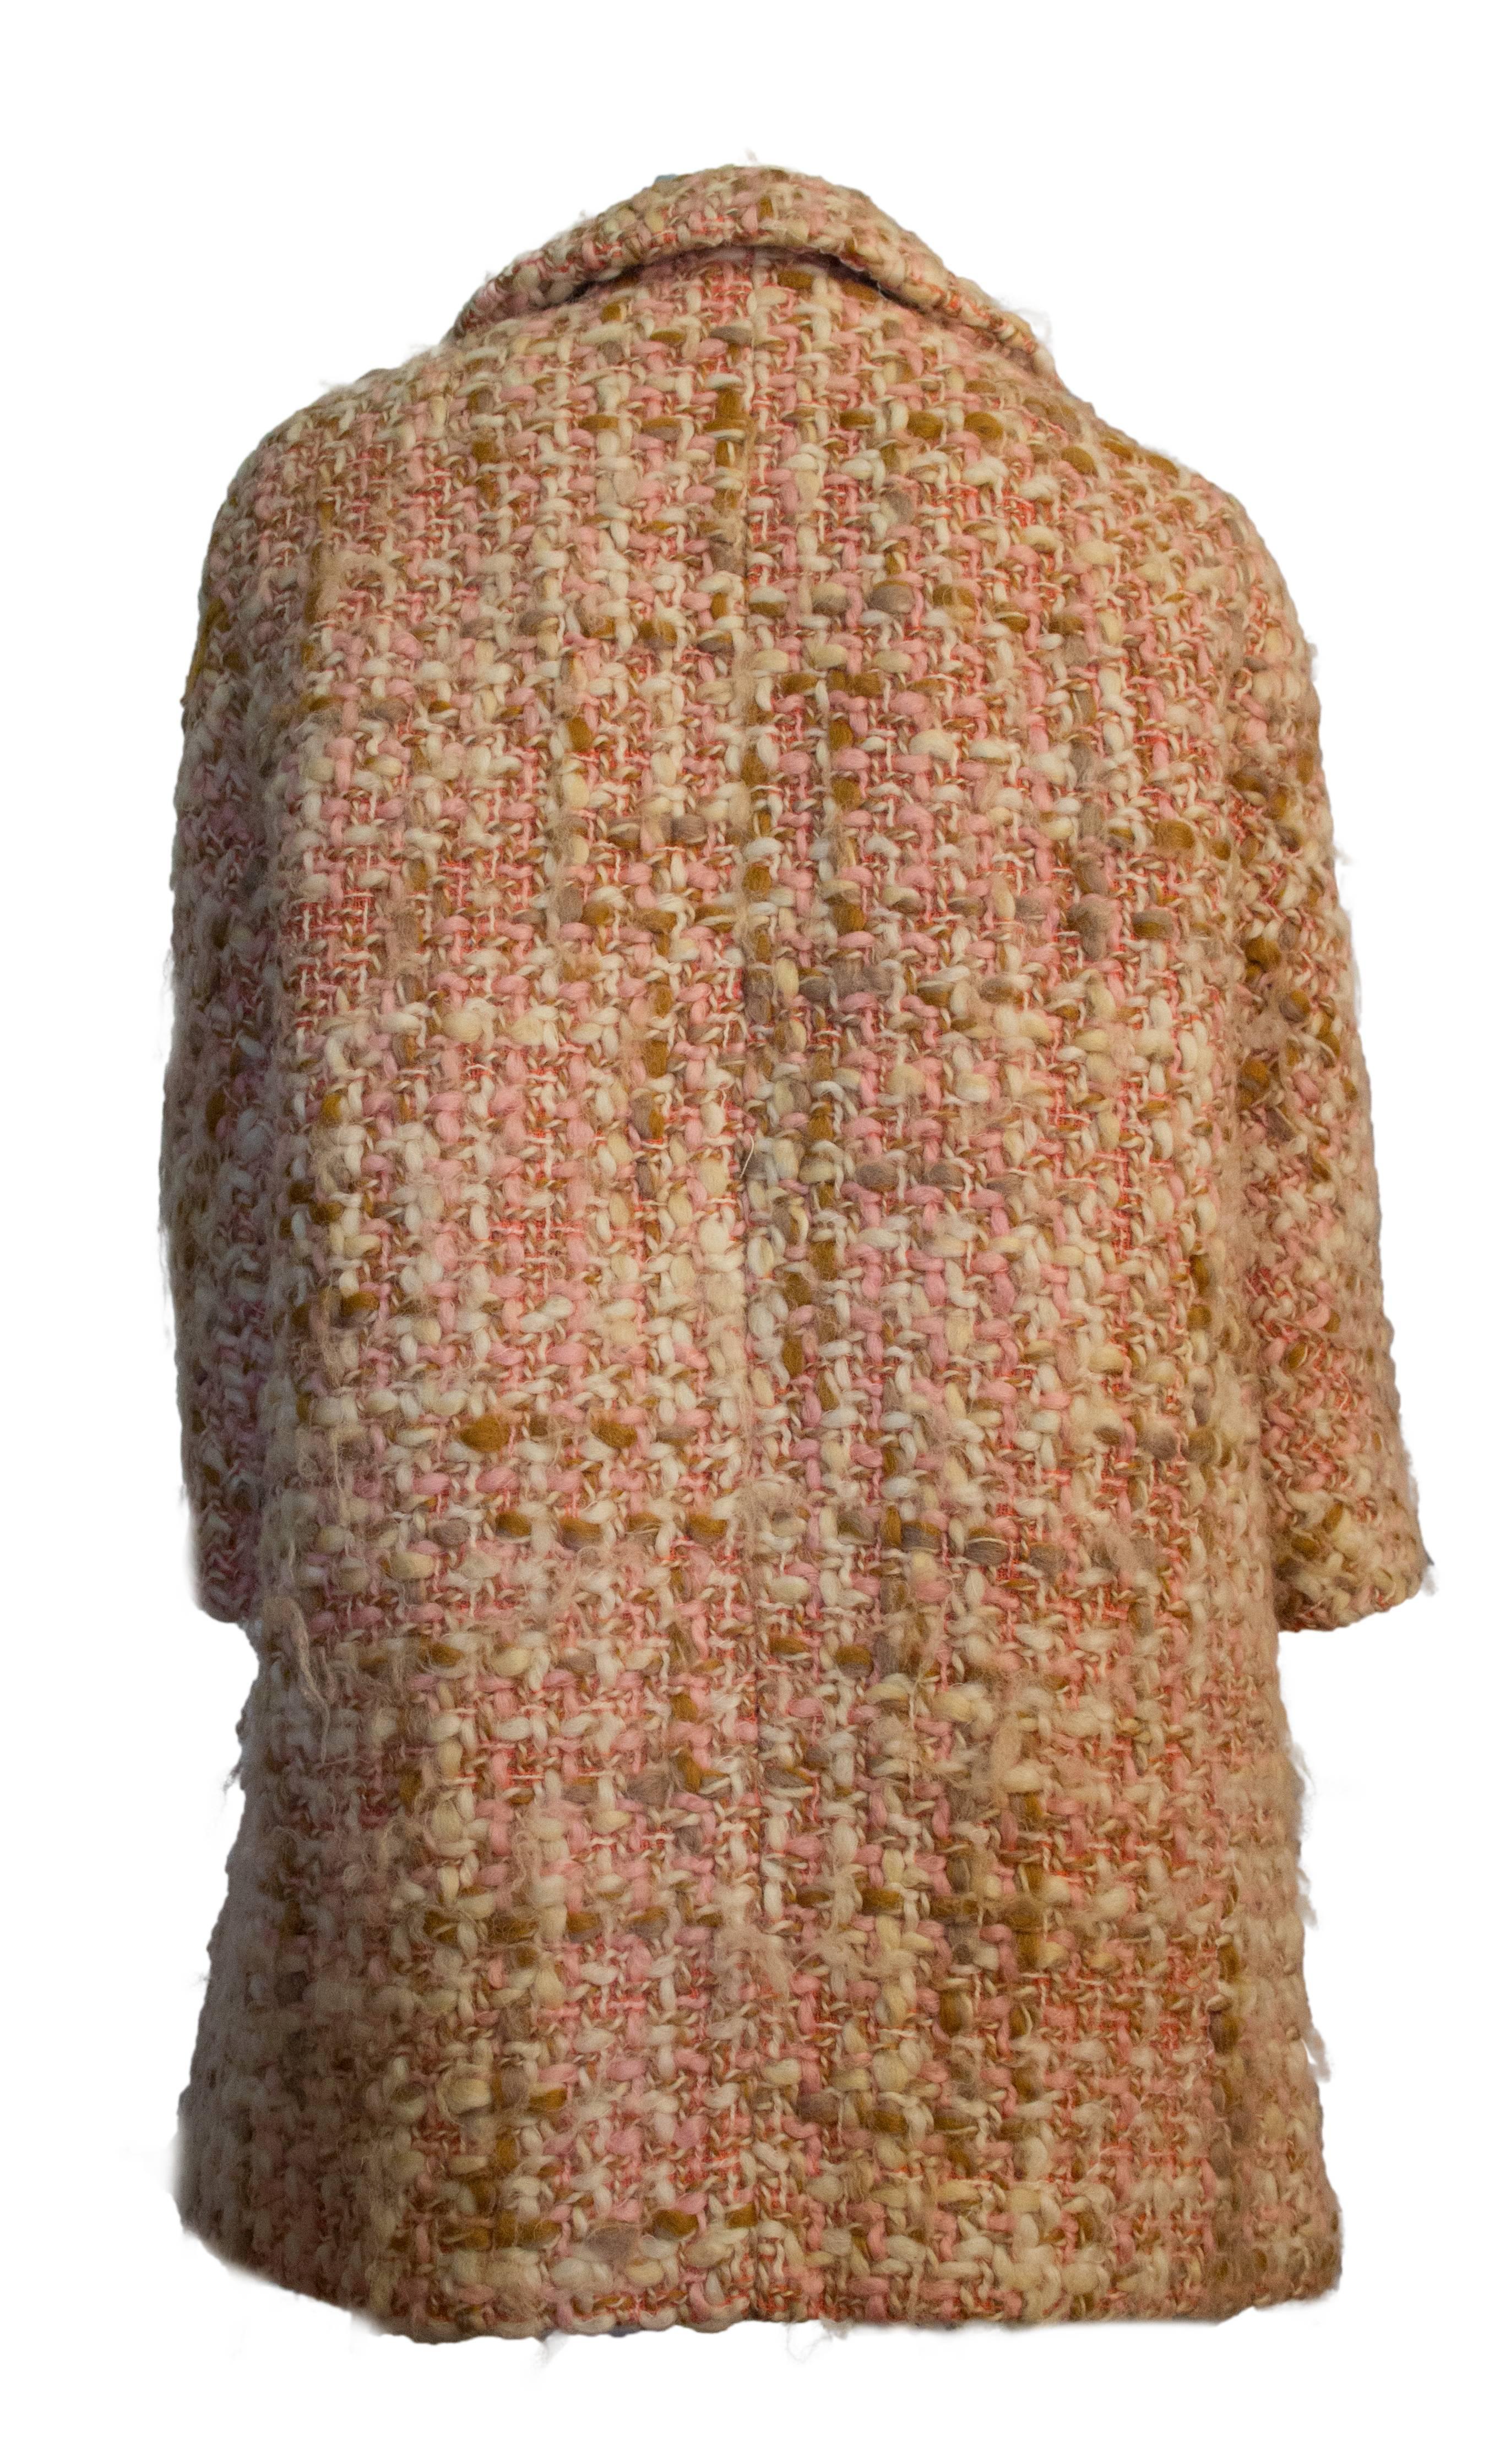 Beige 60s Lilli Ann Knit Tweed Pink and Tan Coat